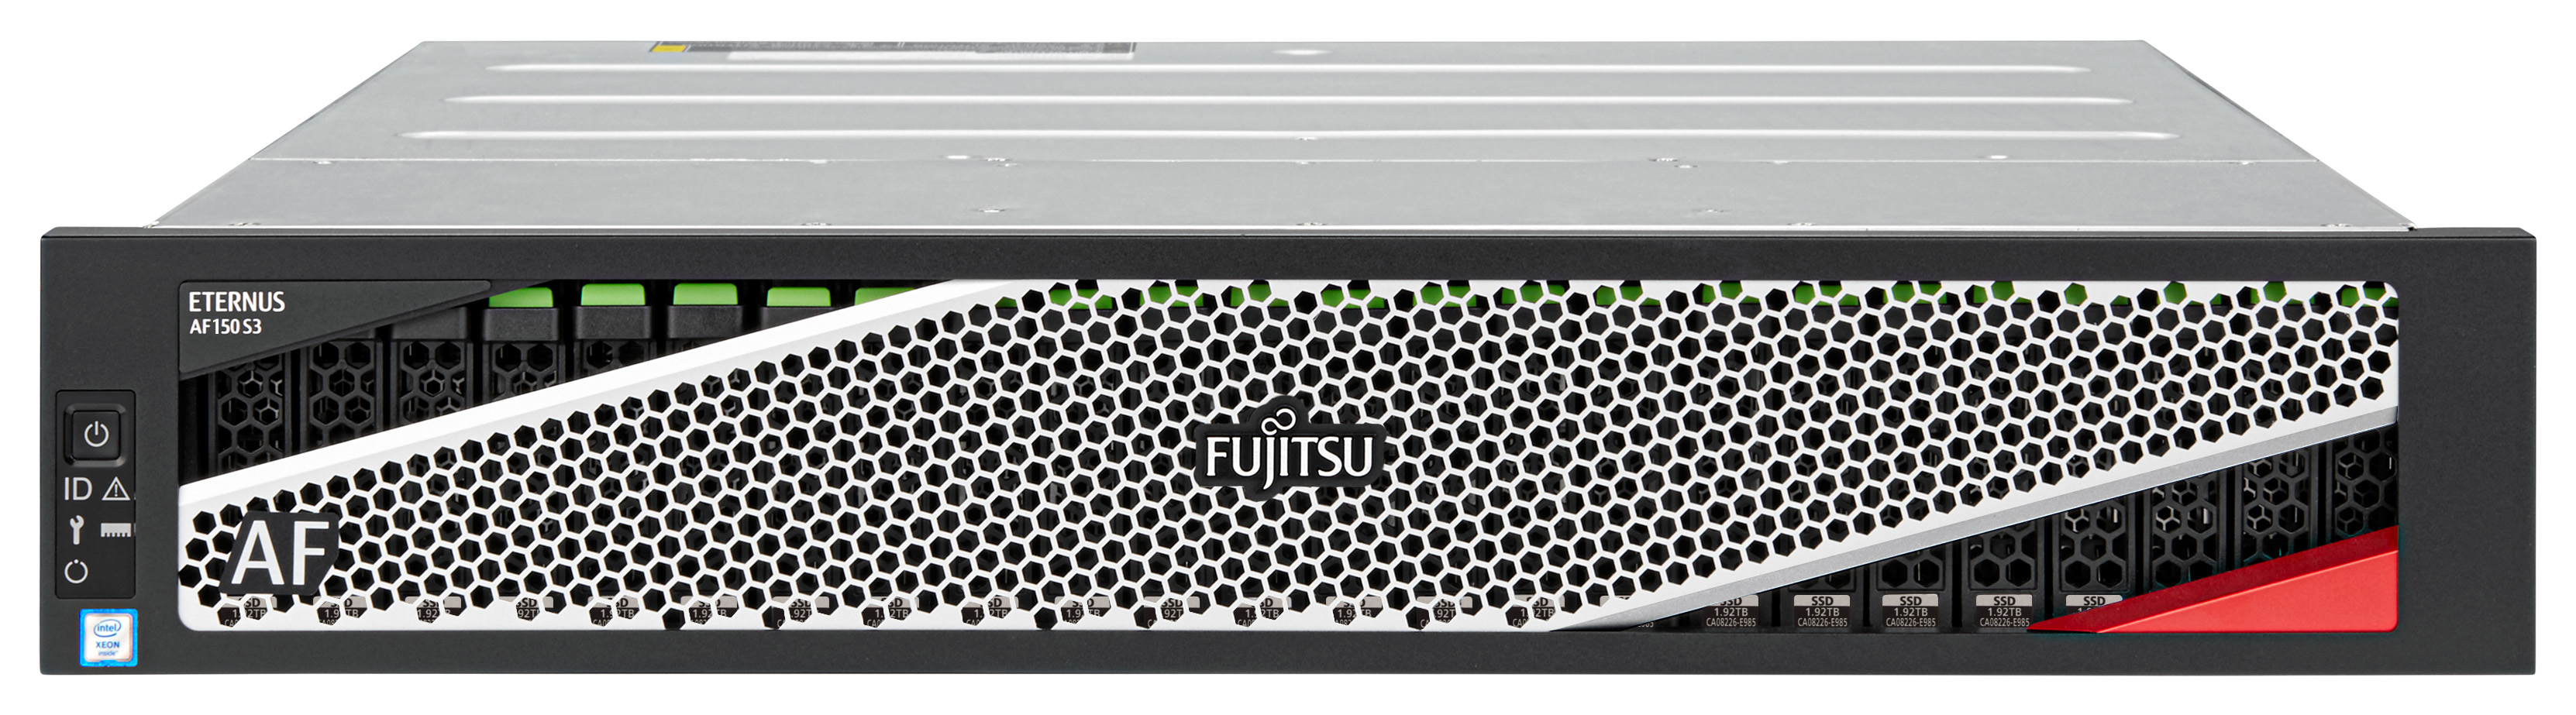 Fujitsu ETERNUS AF 150 S3 - SSD-Festplatten-Array - 46.08 TB - 24 Schächte (SAS-3)